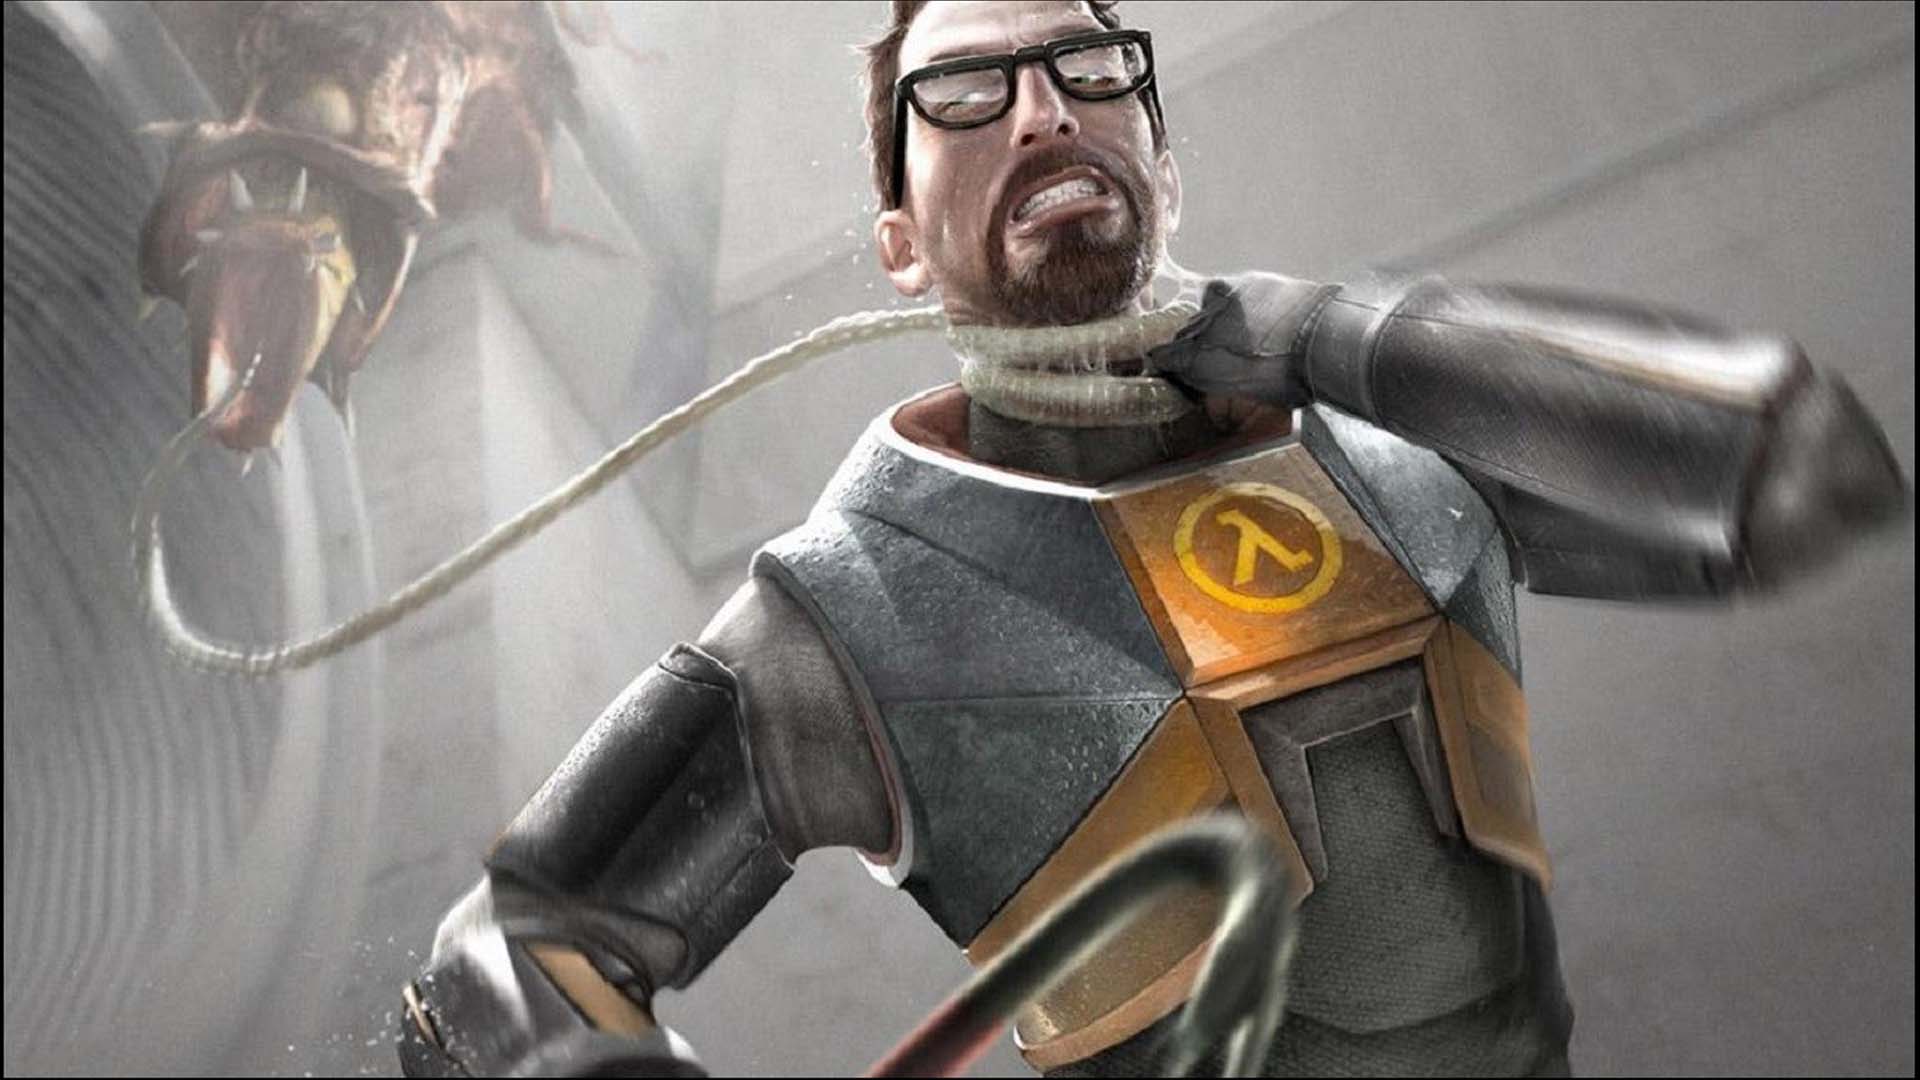 Um novo jogo da série mais aguardada e todos os tempos, Half-Life 3, possivelmente estará sendo lançado no ano que vem. Porém seu anúncio será em breve.